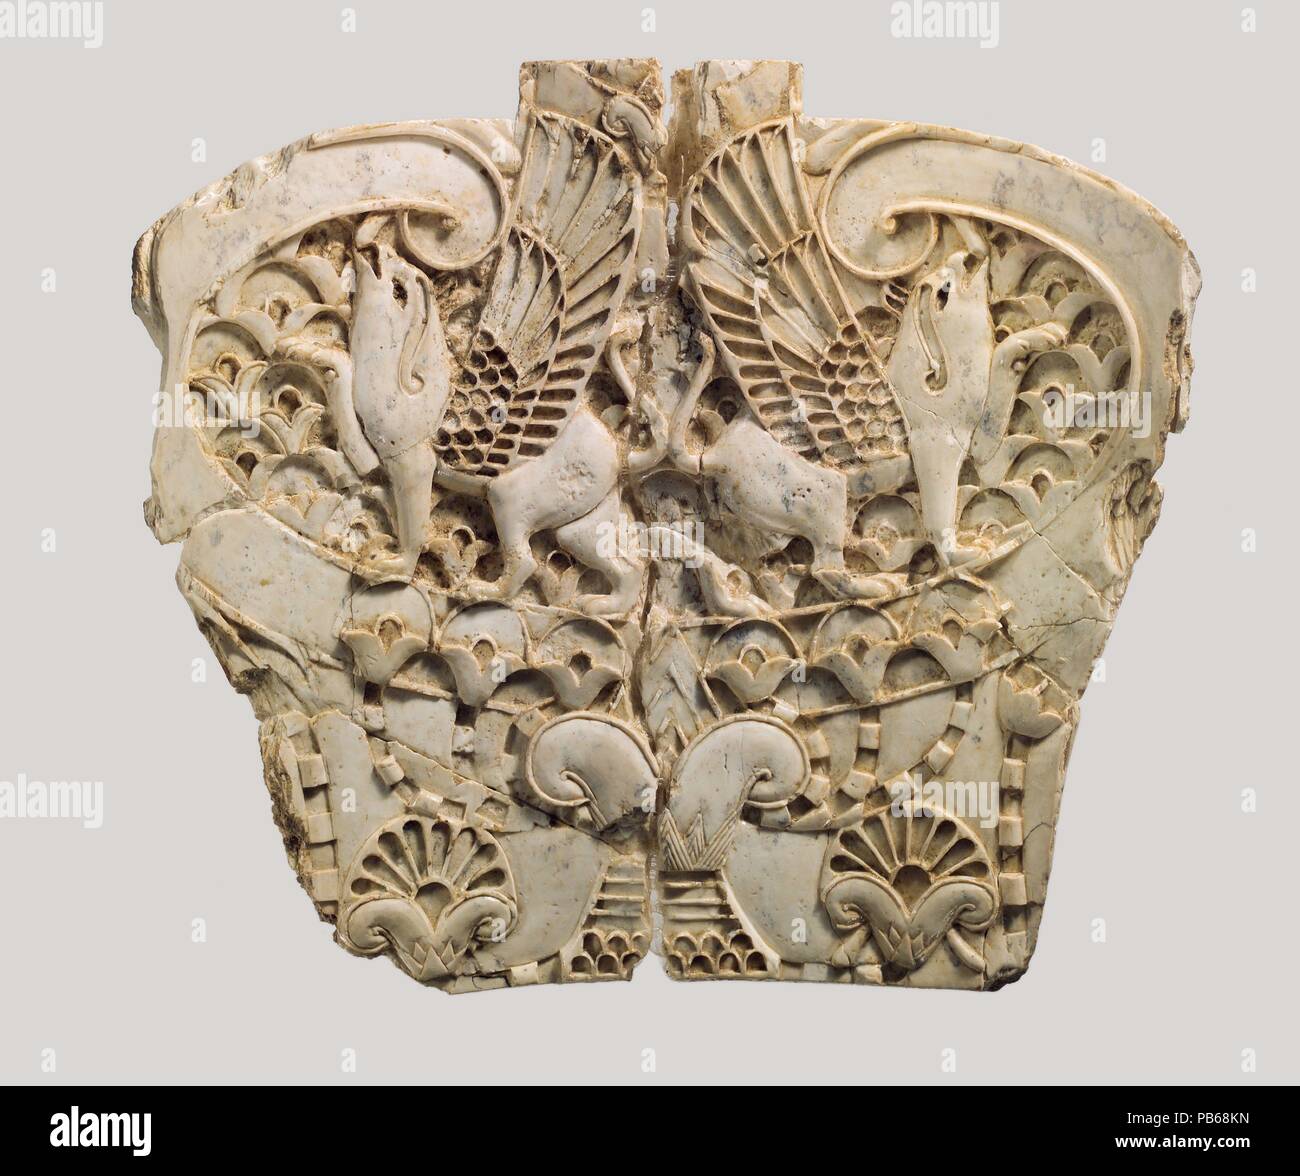 Meubles cloisonné avec plaque deux griffons dans un paysage floral. Culture : l'assyrien. Dimensions : H. 4 1/8 x 11/16 x 4 W. D. 7/16in. (10.5 x 11.9 x 1.1cm). Date : ca. 8ème siècle avant J.-C.. Cette légèrement concave, une plaque sculptée représente deux créatures hybrides profil griffons, avec le corps d'un lion et la tête, les ailes et les serres d'un aigle, au sein d'un paysage floral manque maintenant ses incrustations de couleur vive. Il a été trouvé dans un grand cellier à Fort Shalmaneser, un bâtiment royal à Nimrud c'était probablement utilisé pour stocker et rendre hommage booty recueillies par les Assyriens, tandis que le camp militaire Banque D'Images